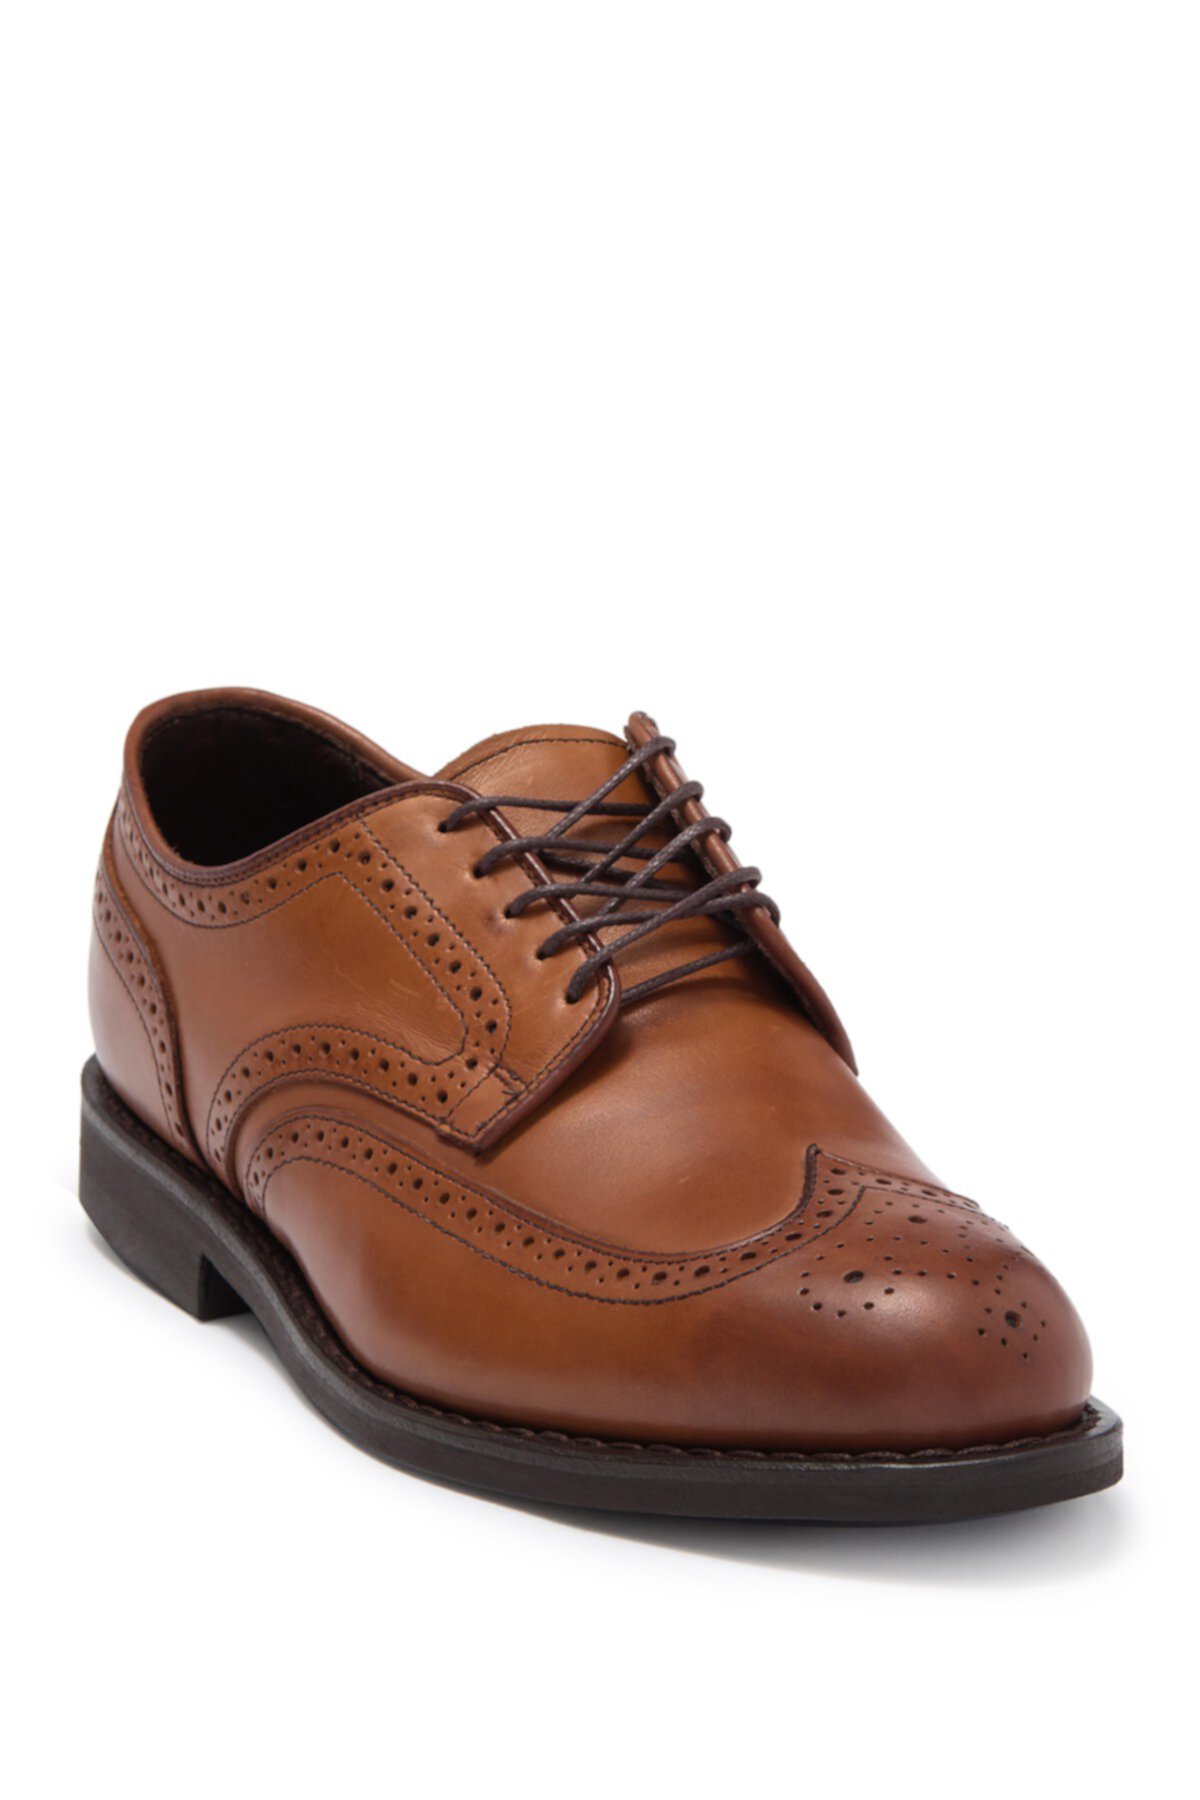 Обувь New York Wingtip - Доступна широкая ширина Allen Edmonds